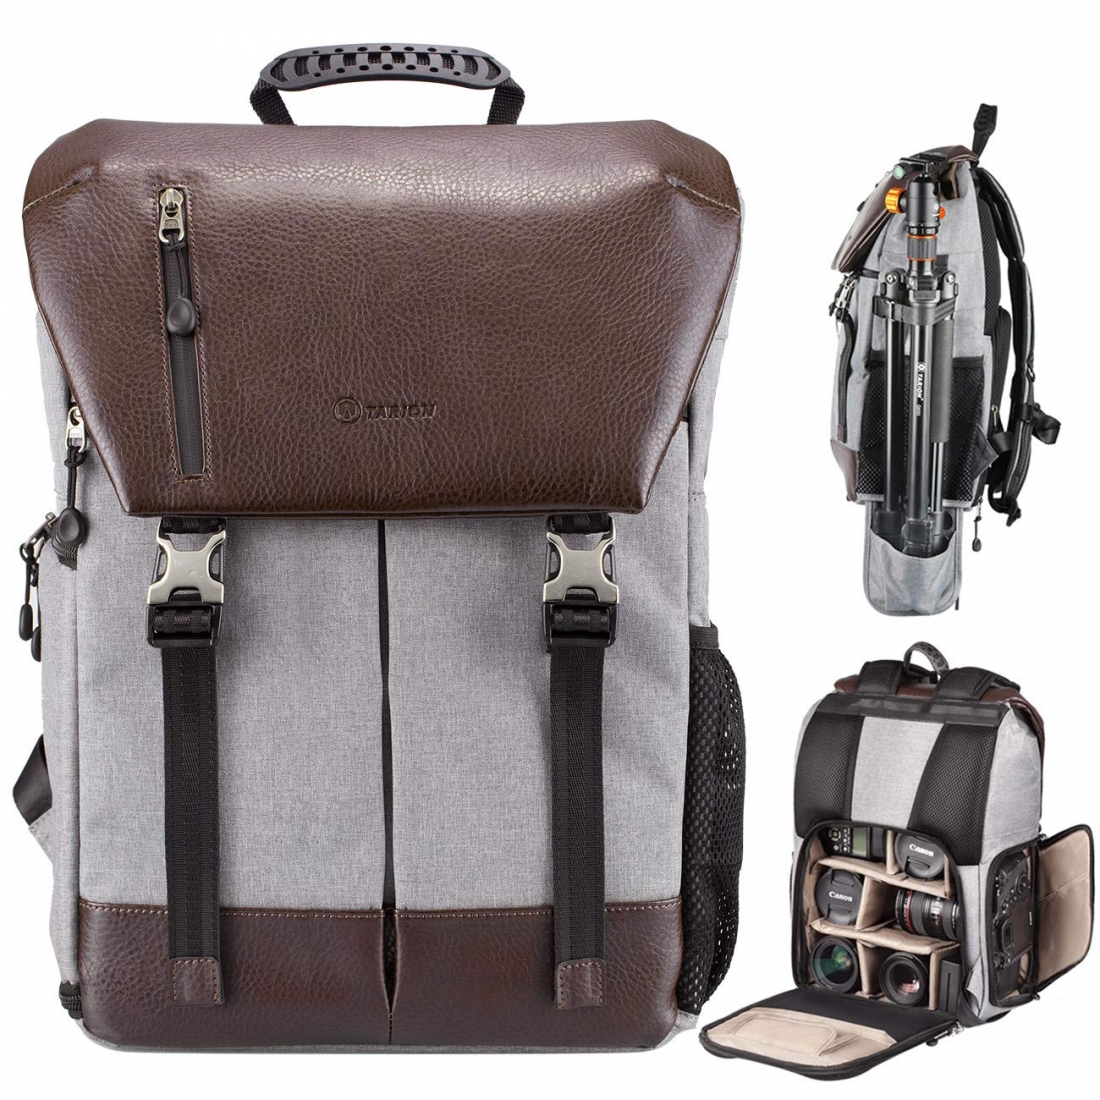 Best Camera Backpacks for Travelers